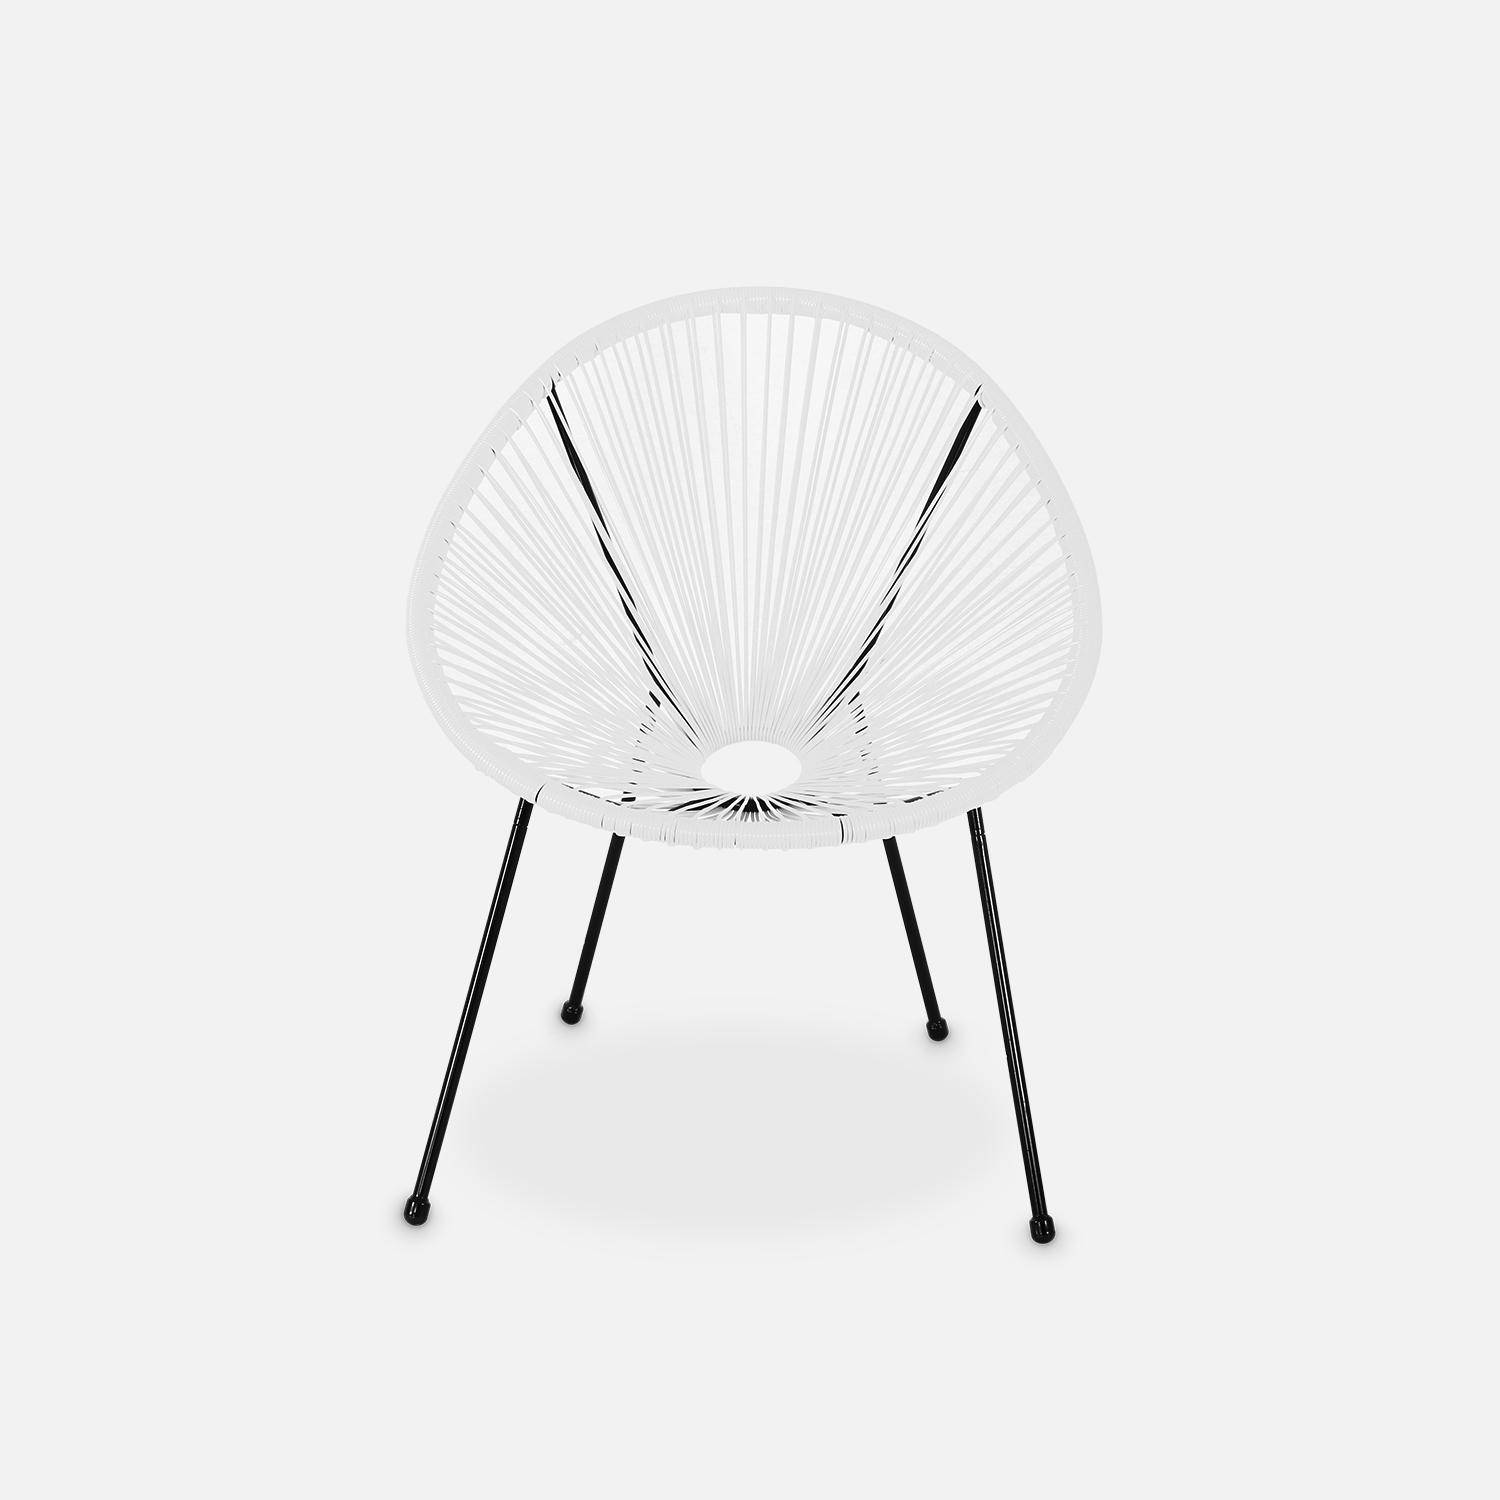 ACAPULCO stoel ei-vormig - Wit- Stoel 4 poten retro design, plastic koorden, binnen/buiten Photo3